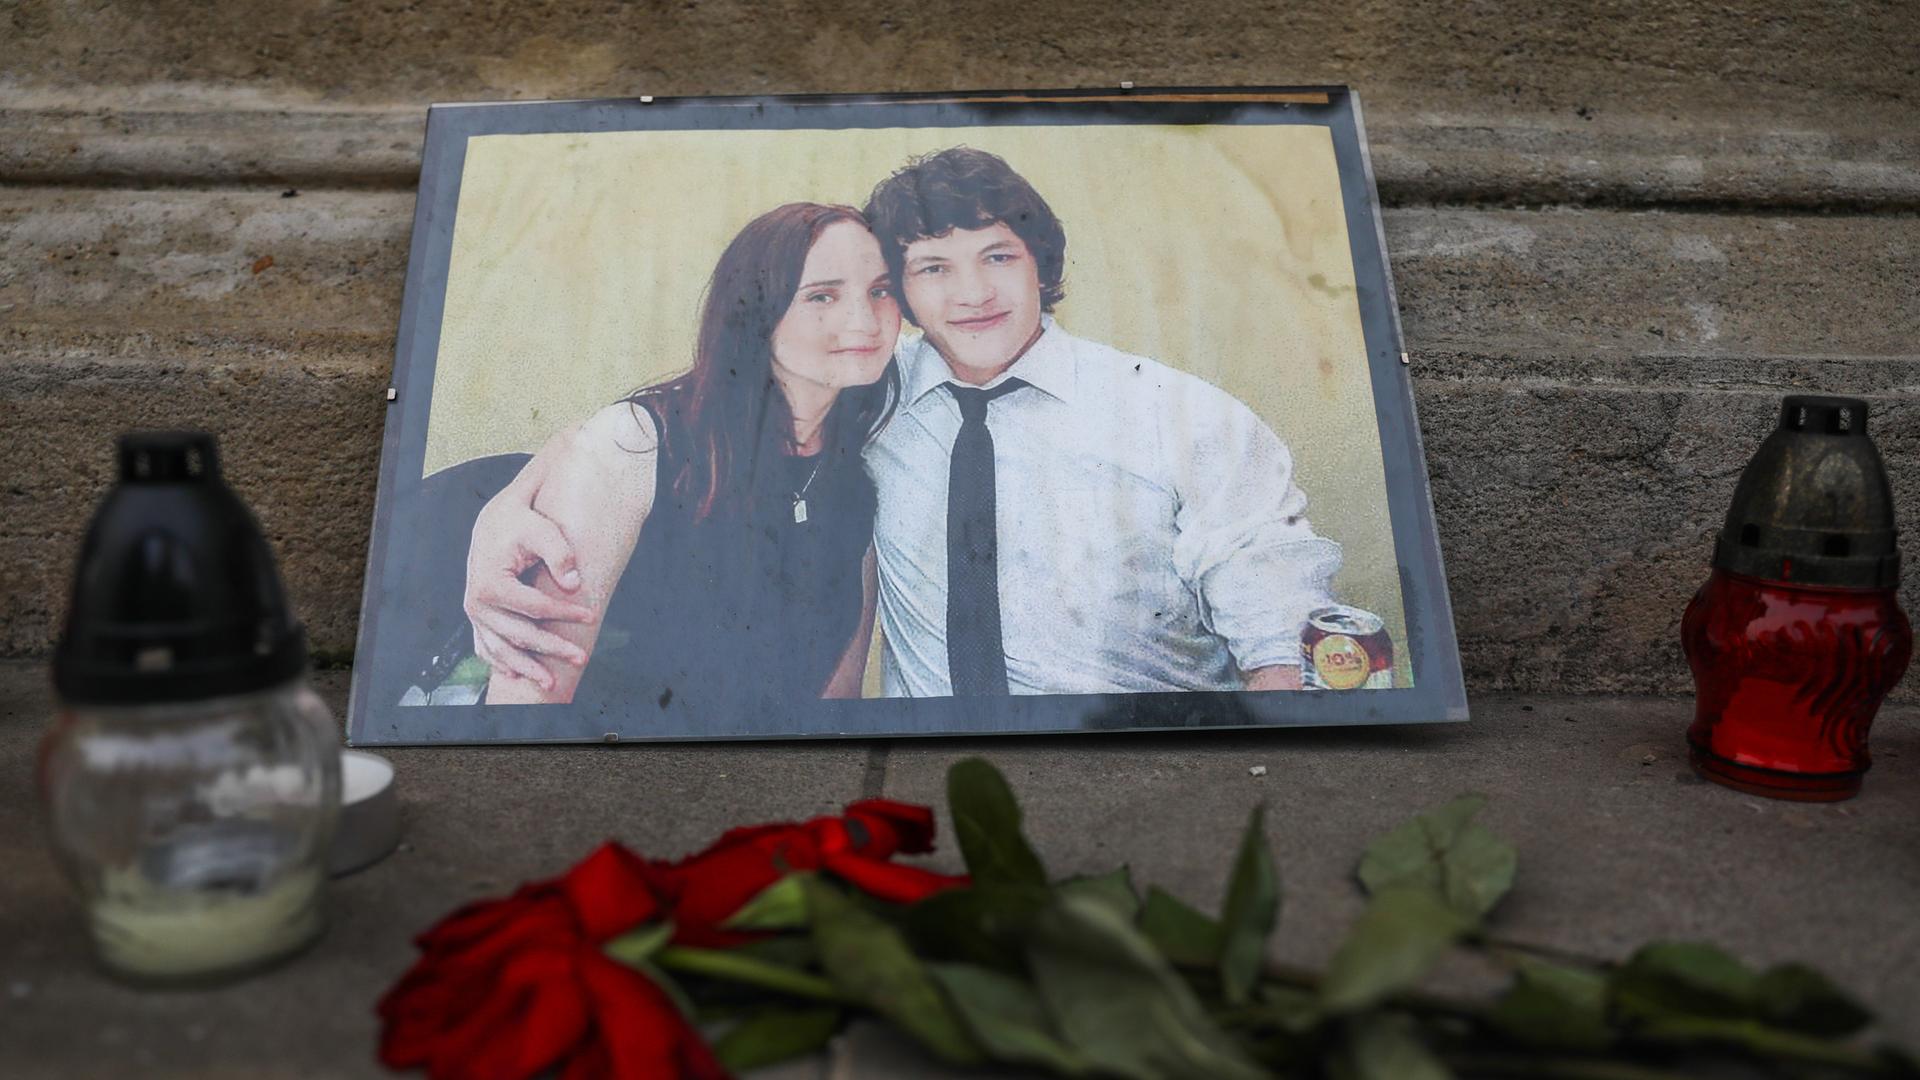 Zwei Kerzen stehen neben einer Fotografie des Investigativjournalisten Jan Kuciak und seiner Verlobten Martina Kusnirova, die 2018 in der Slowakei ermordet wurden. Vor dem Bild liegt eine rote Rose. 